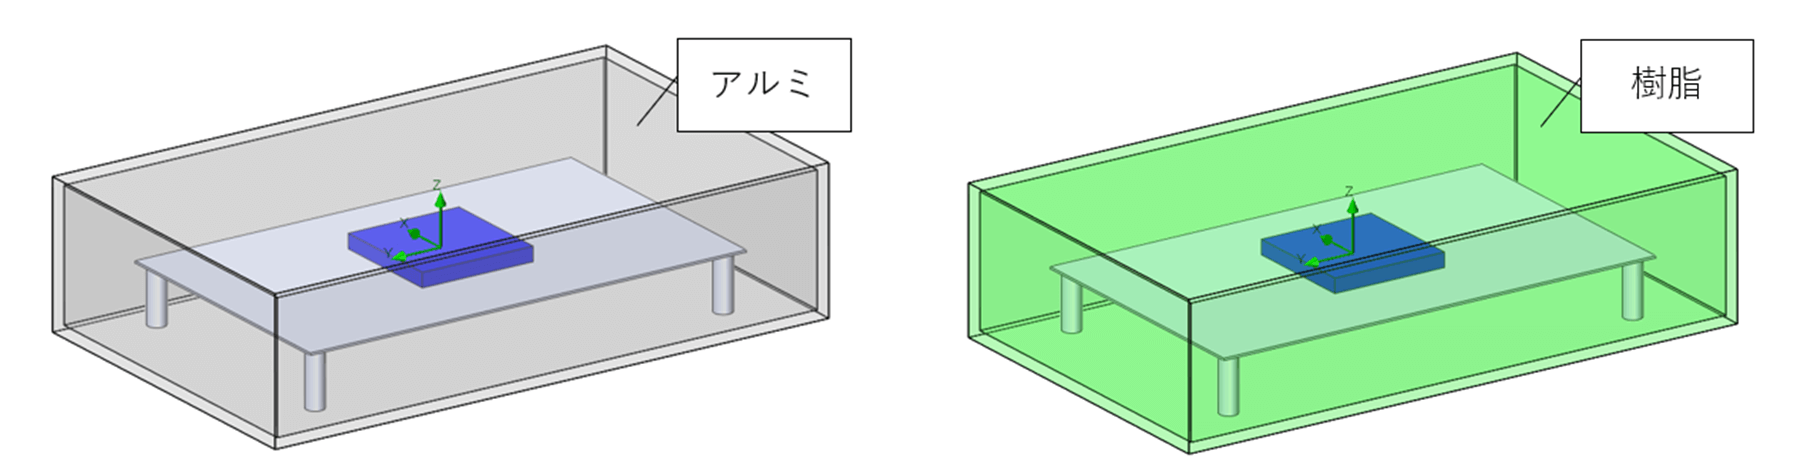 図表4：ケース別解析モデル(左：アルミ、右：樹脂)